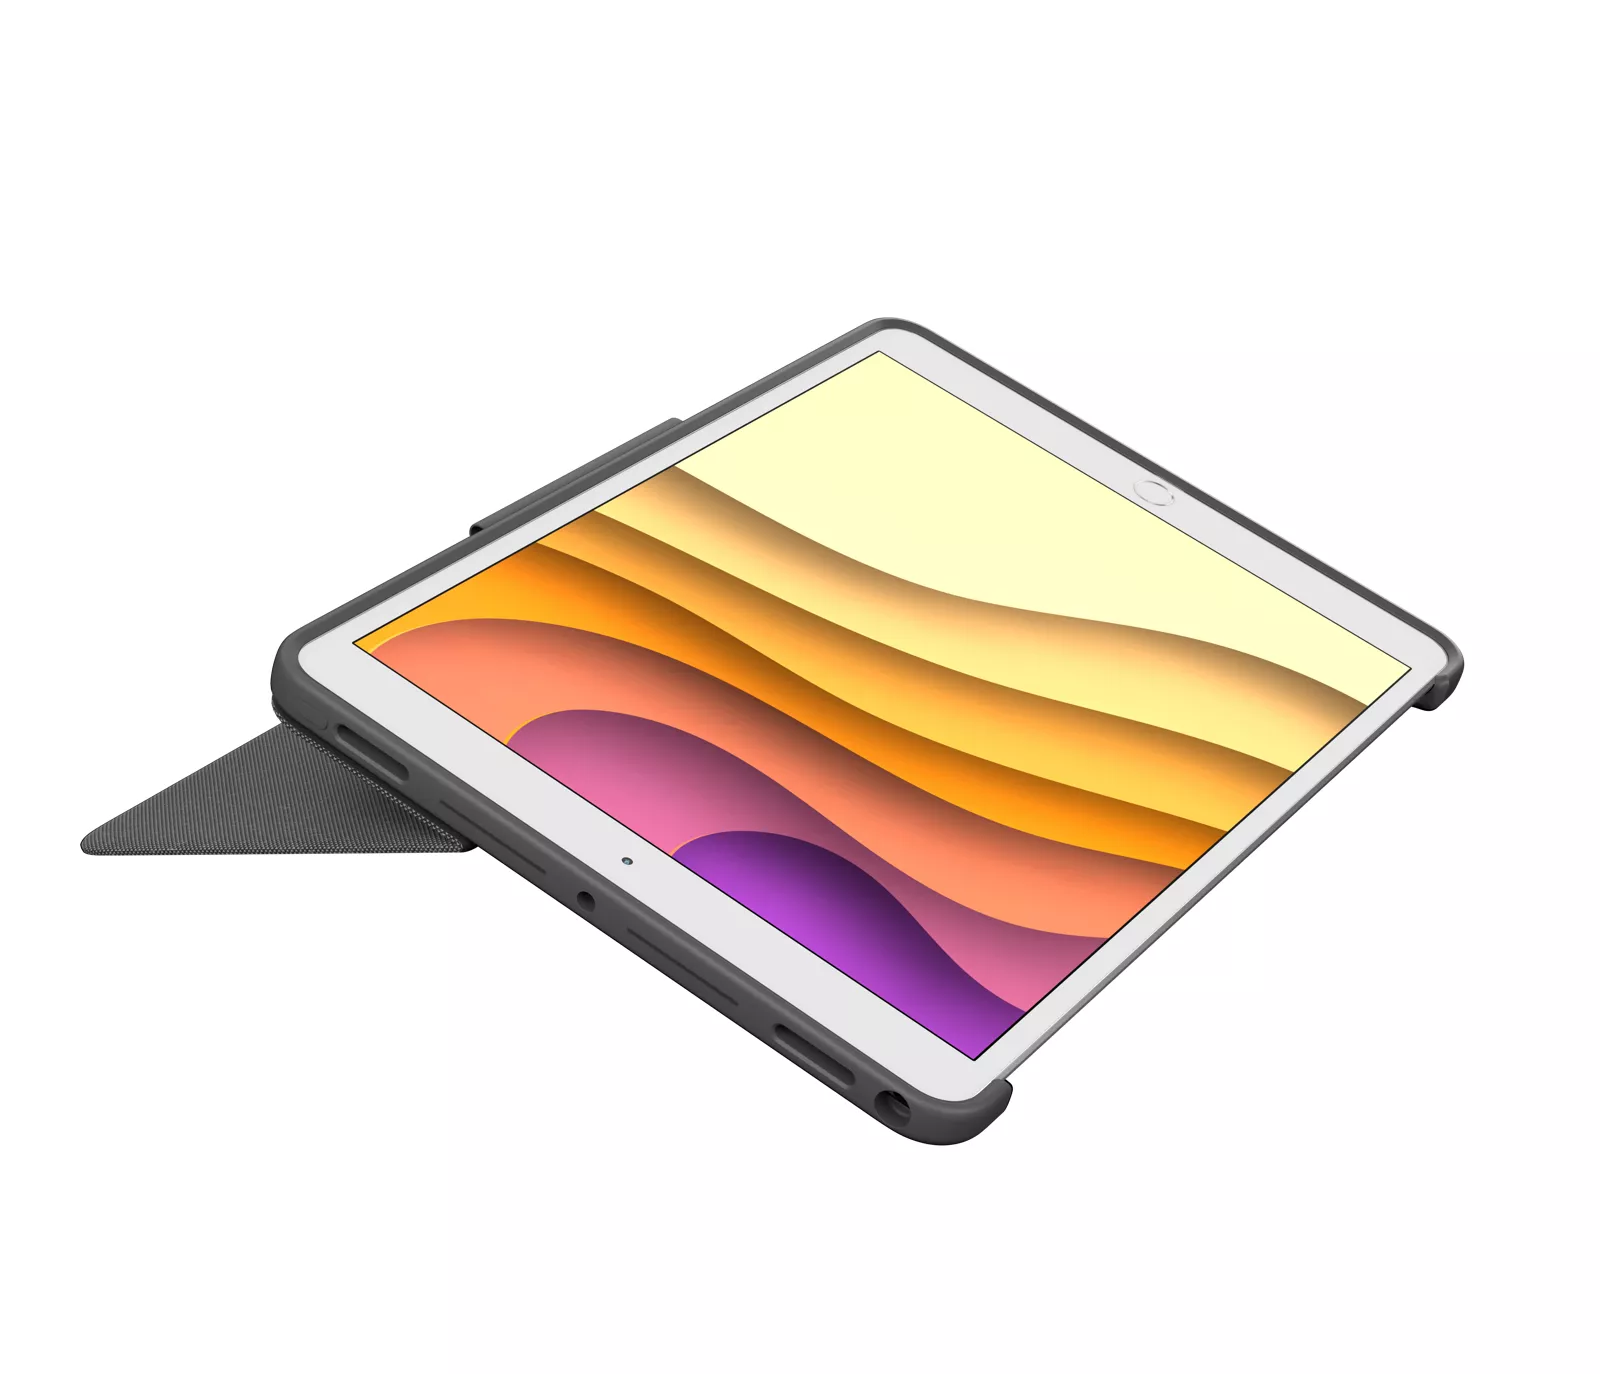 Vente Logitech Combo Touch for iPad Air (3rd generation) Logitech au meilleur prix - visuel 4